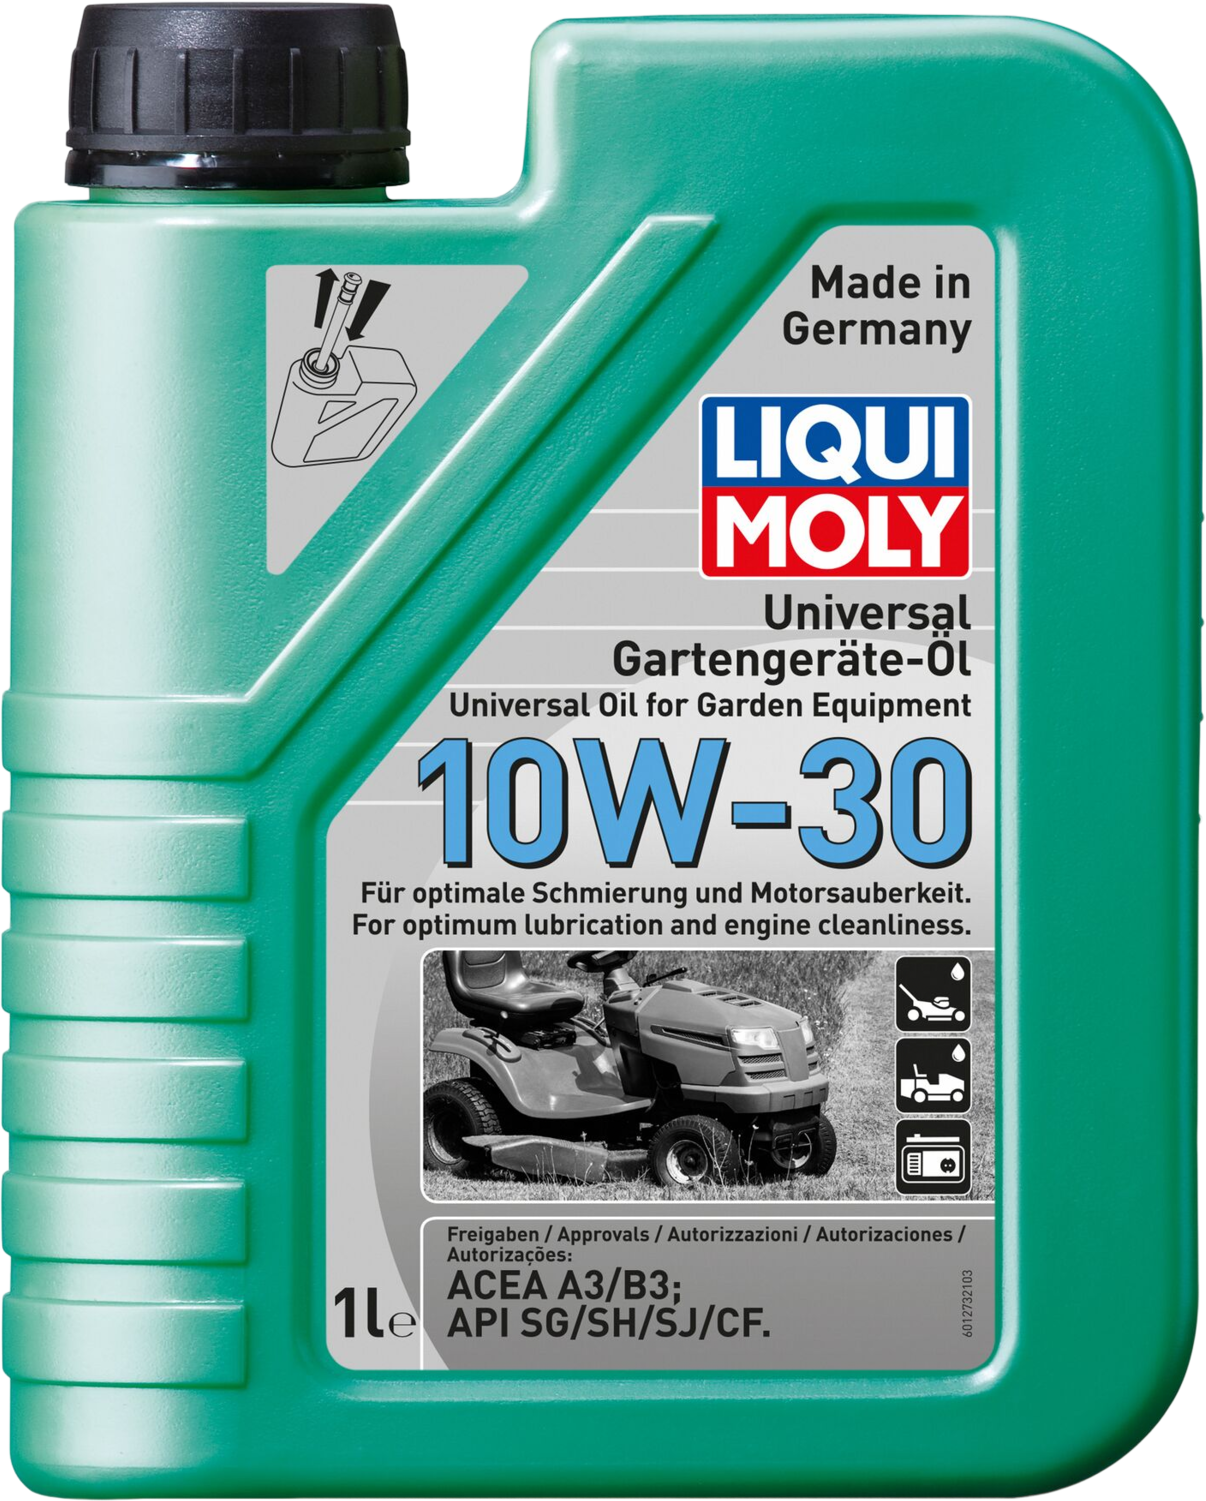 Liqui Moly Universele olie voor tuingereedschap 10W-30, 1 lt